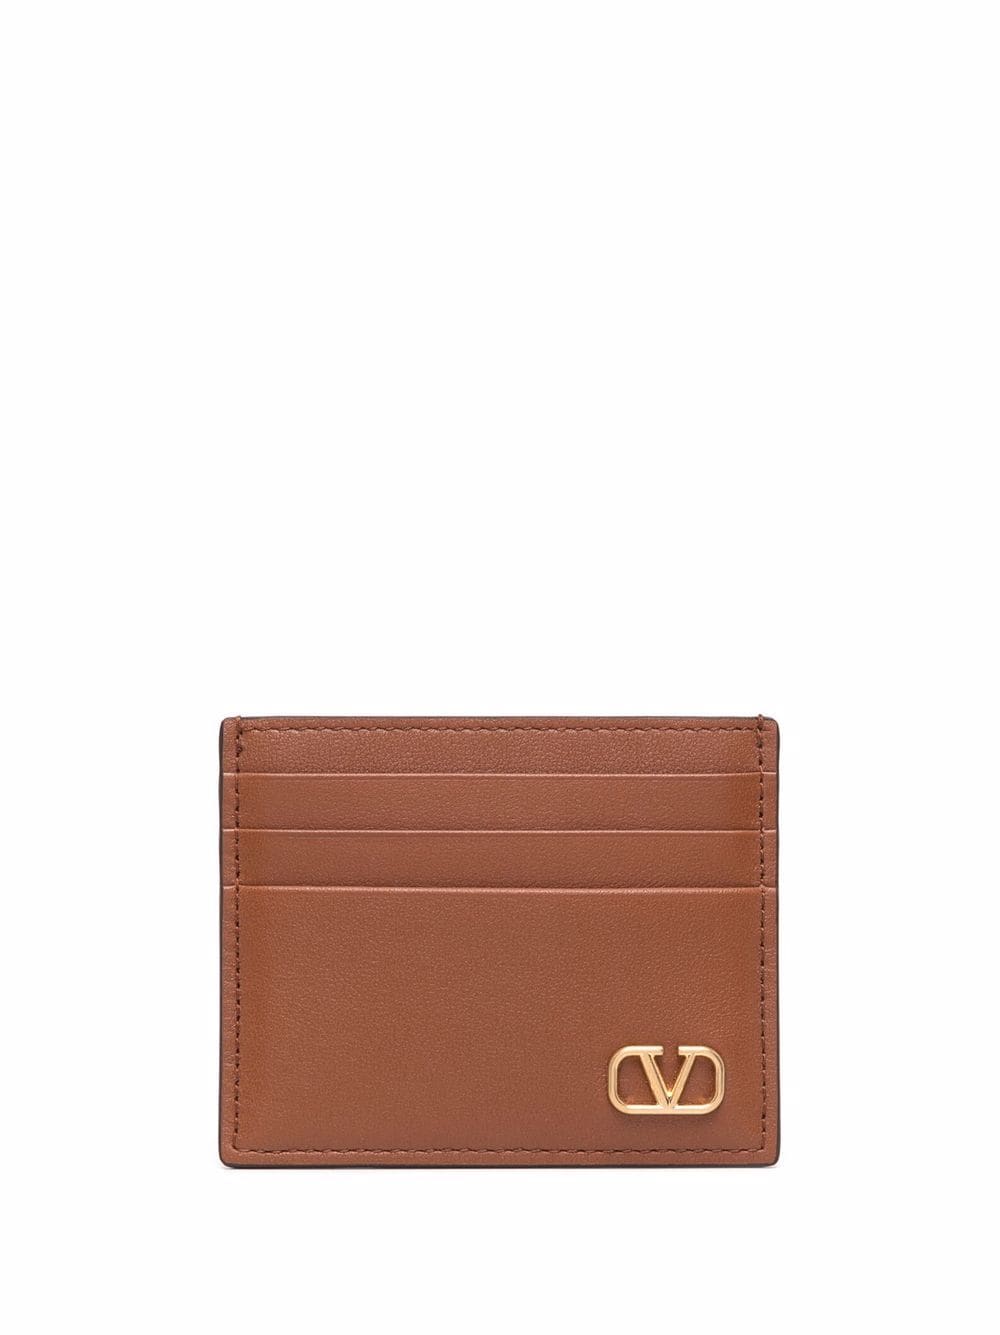 Valentino Garavani VLogo leather cardholder - Brown von Valentino Garavani